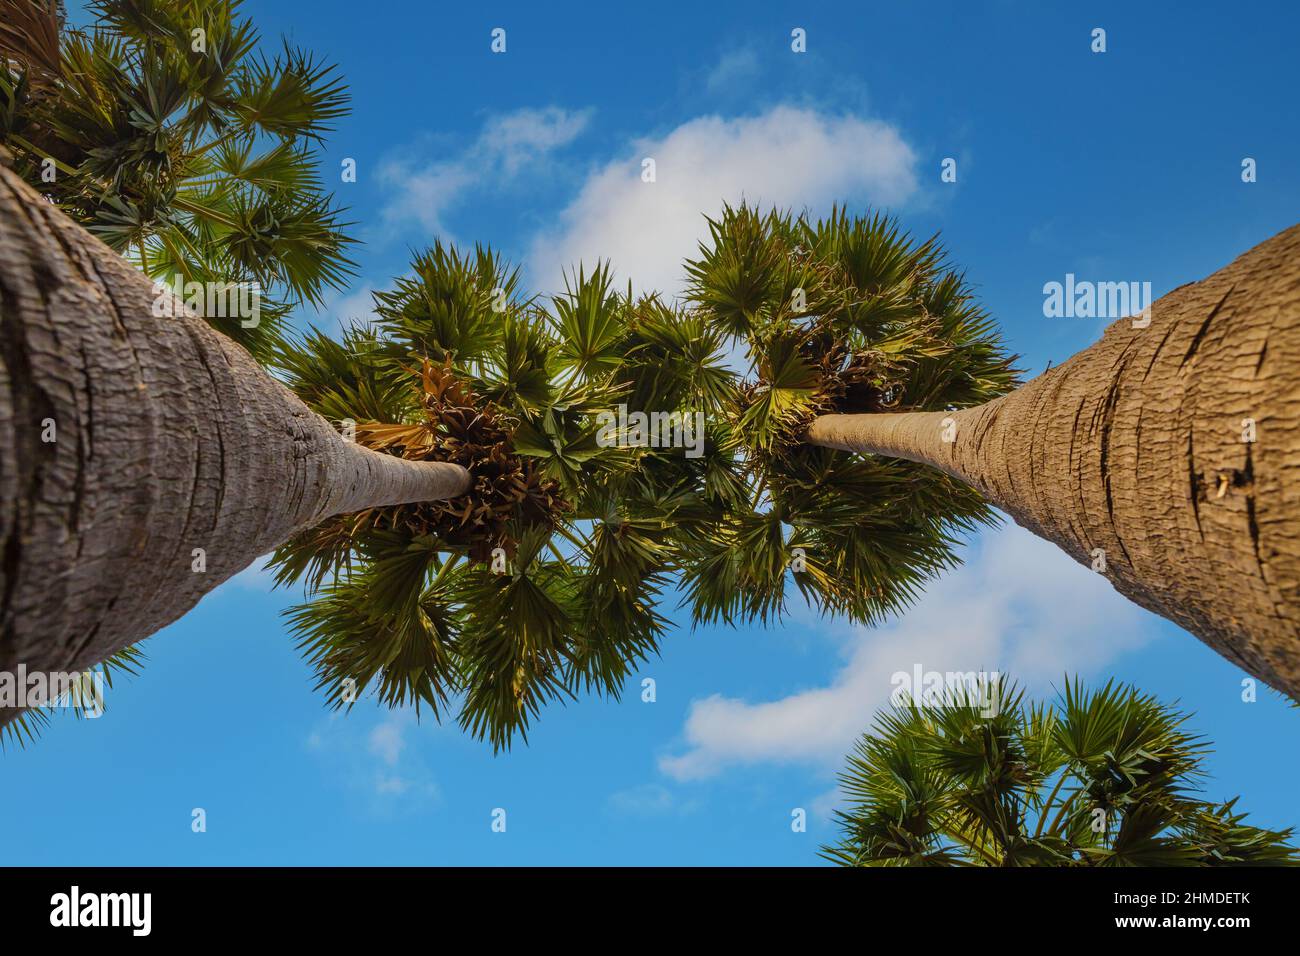 Zwei Palmen gegen den blau bewölkten Himmel, schöner Urlaubsort. Tropisches Reiseziel. Stockfoto